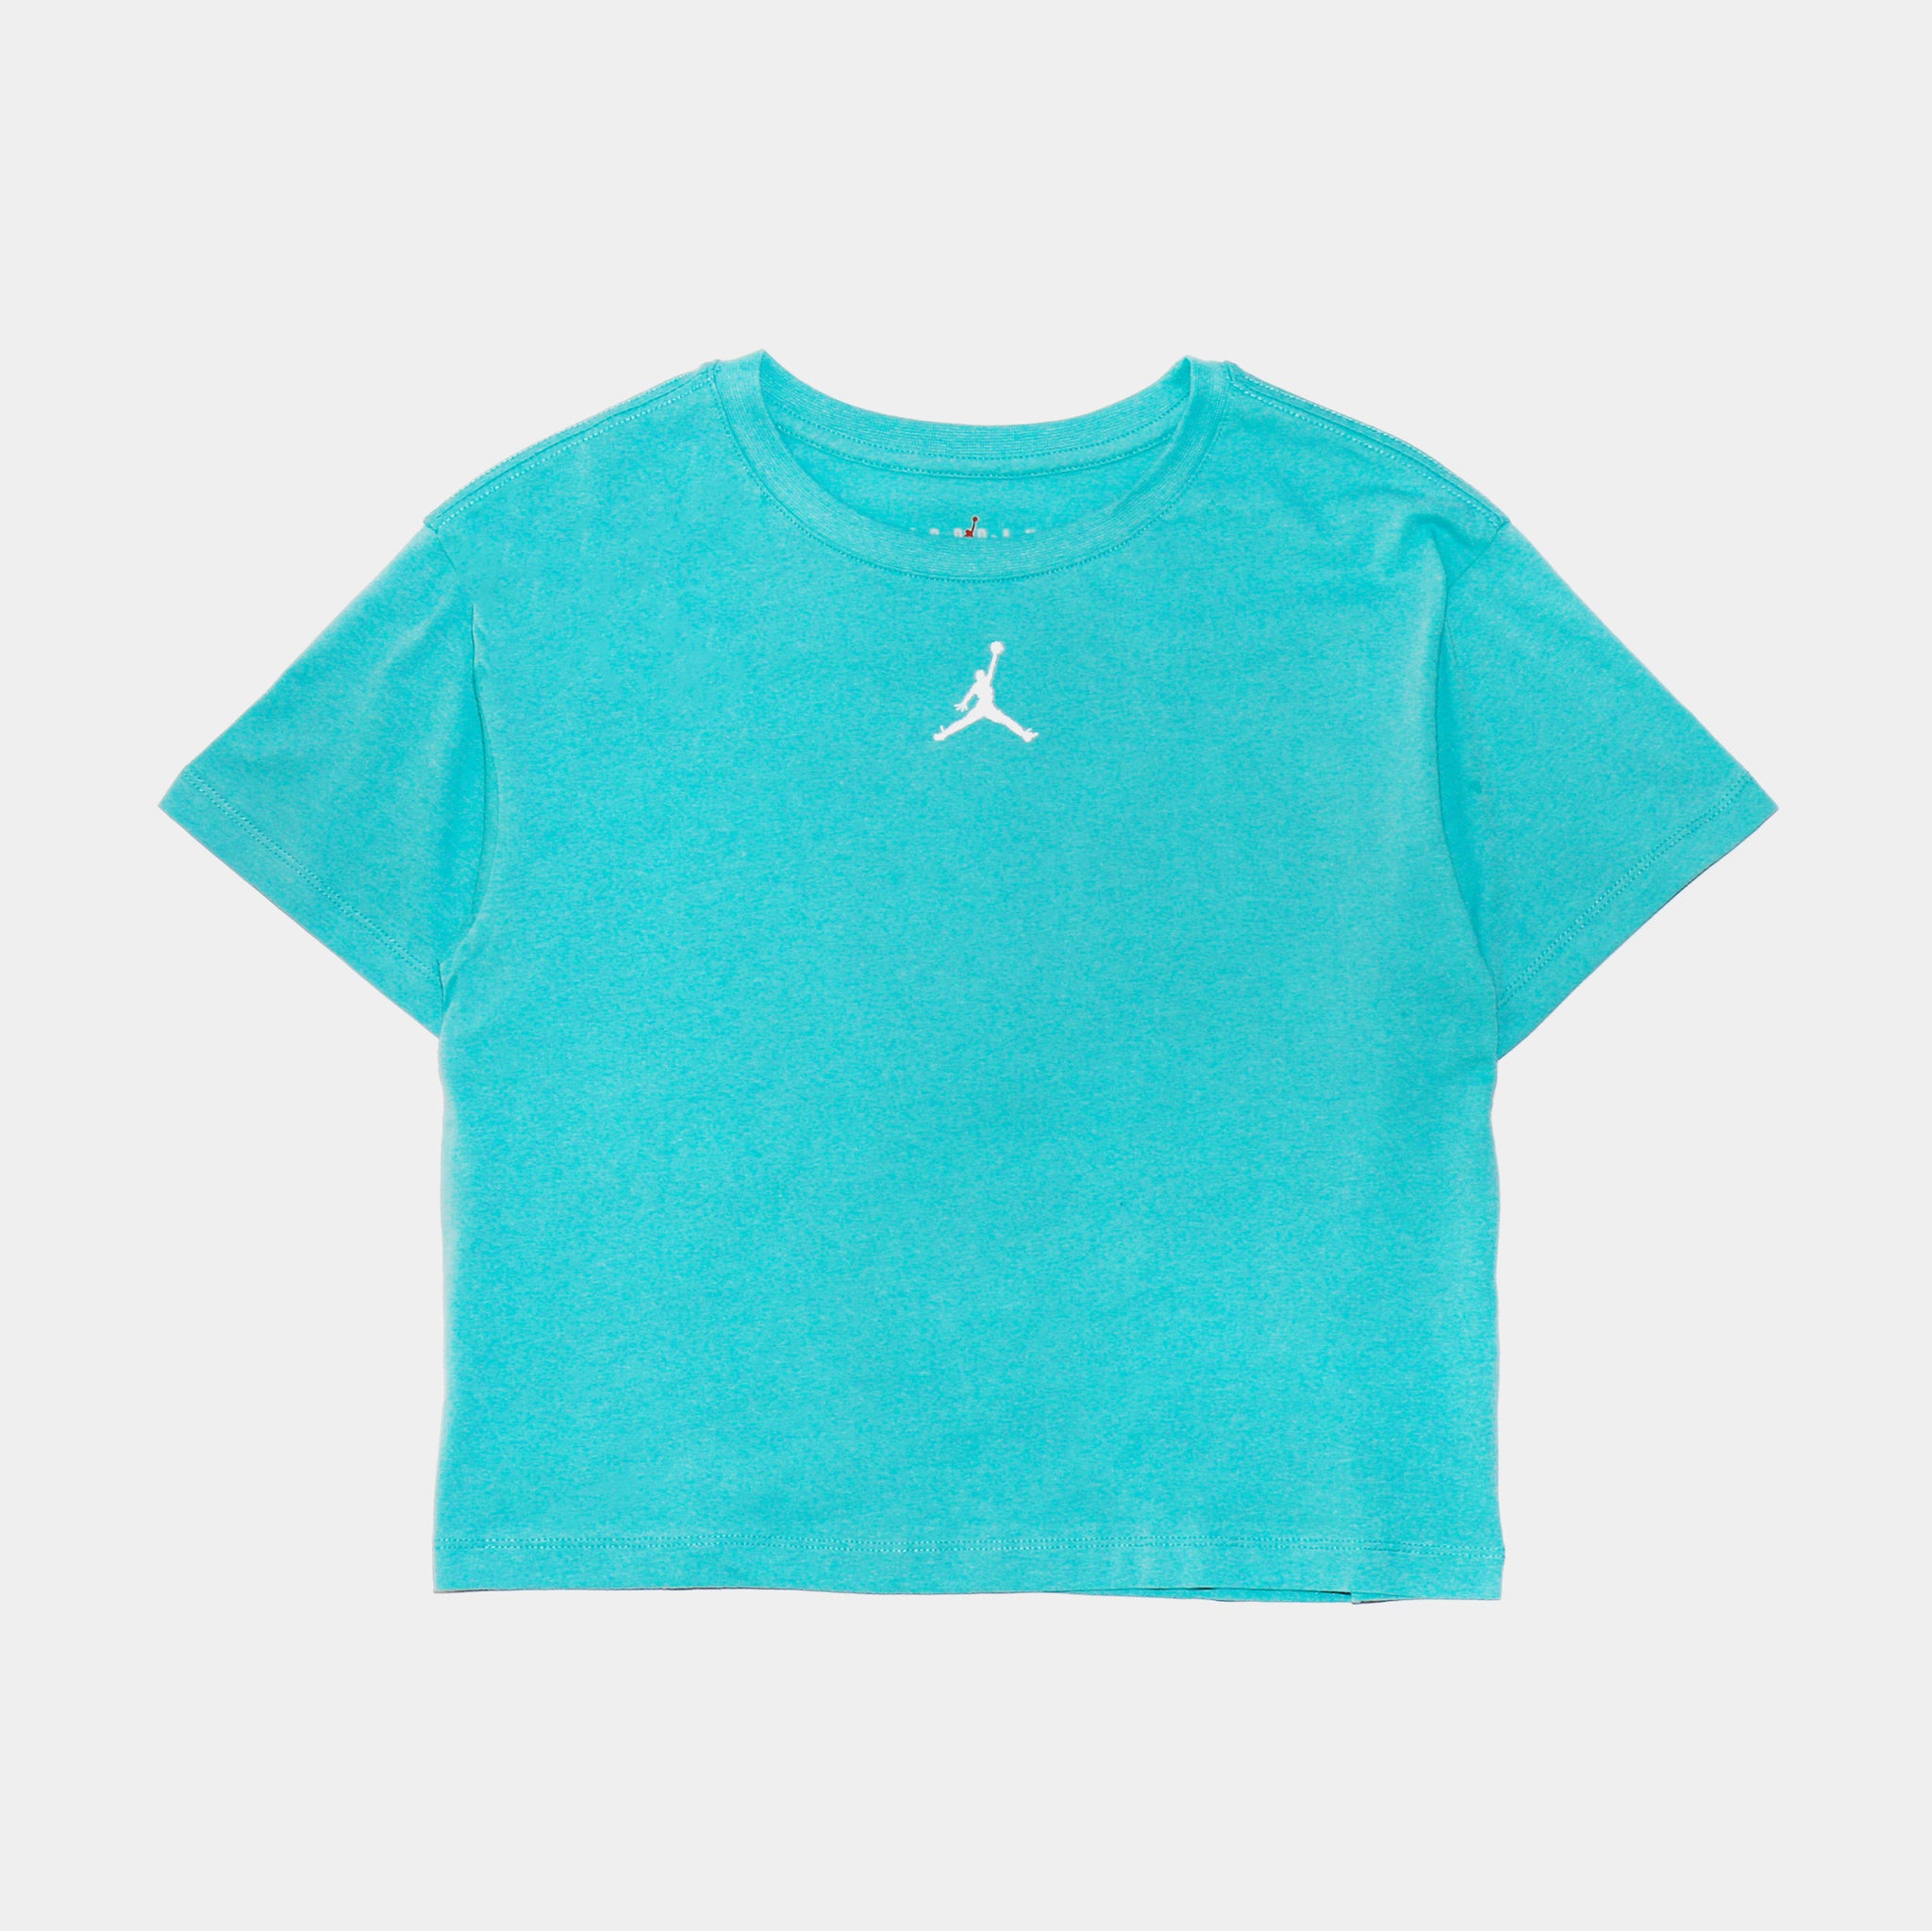 Essentials Tee Grade School Tshirt (Aqua Blue)